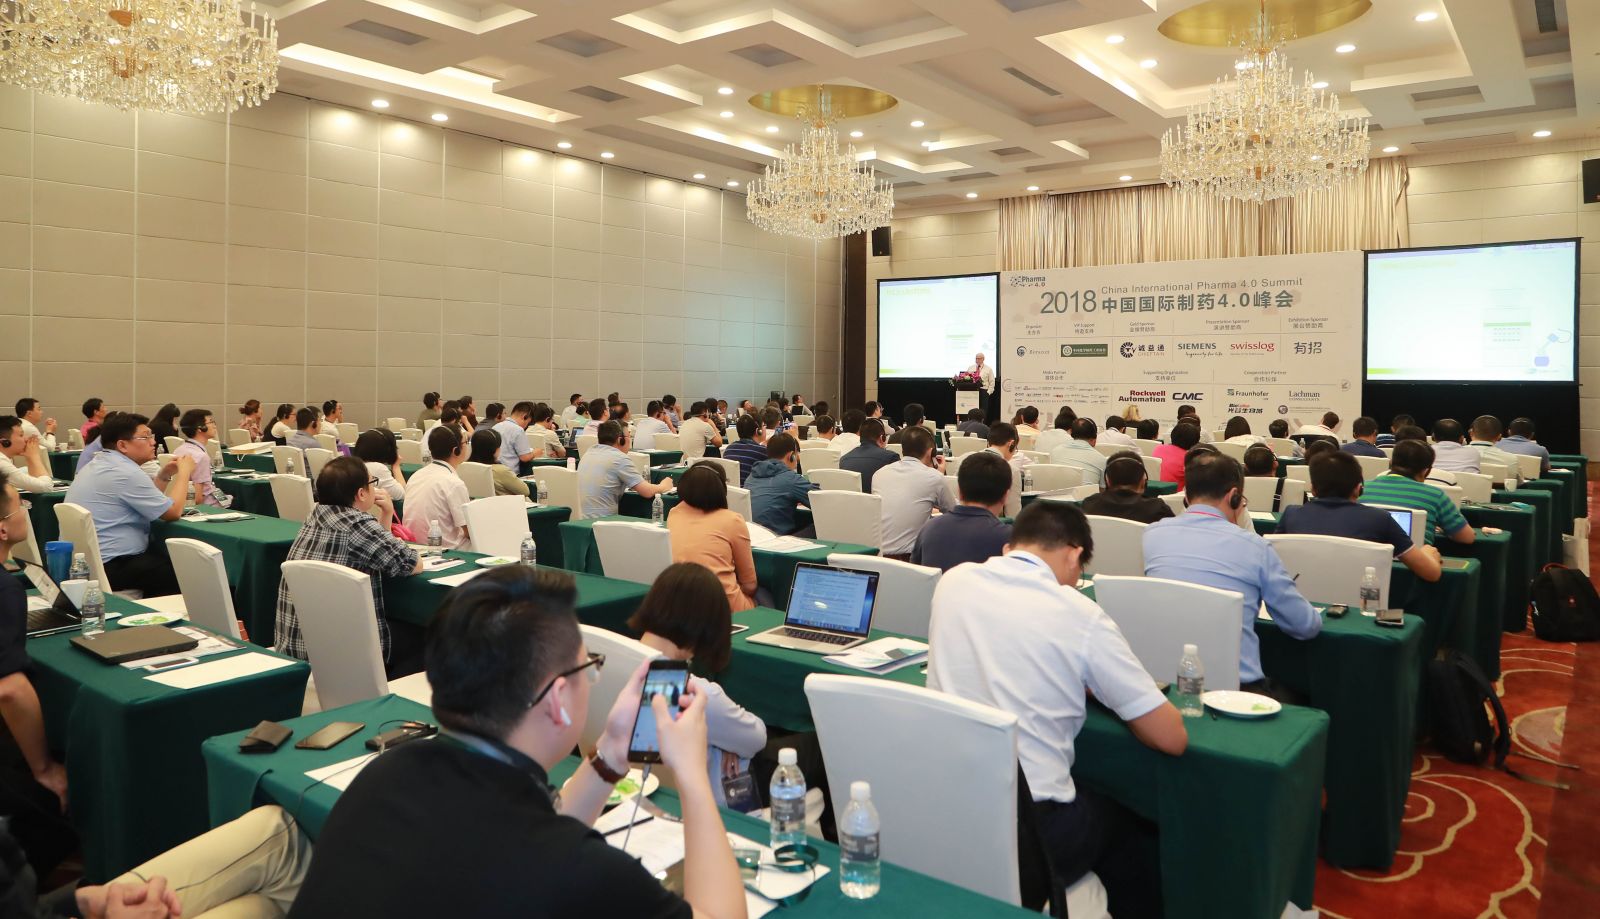 2018中国国际制药4.0峰会